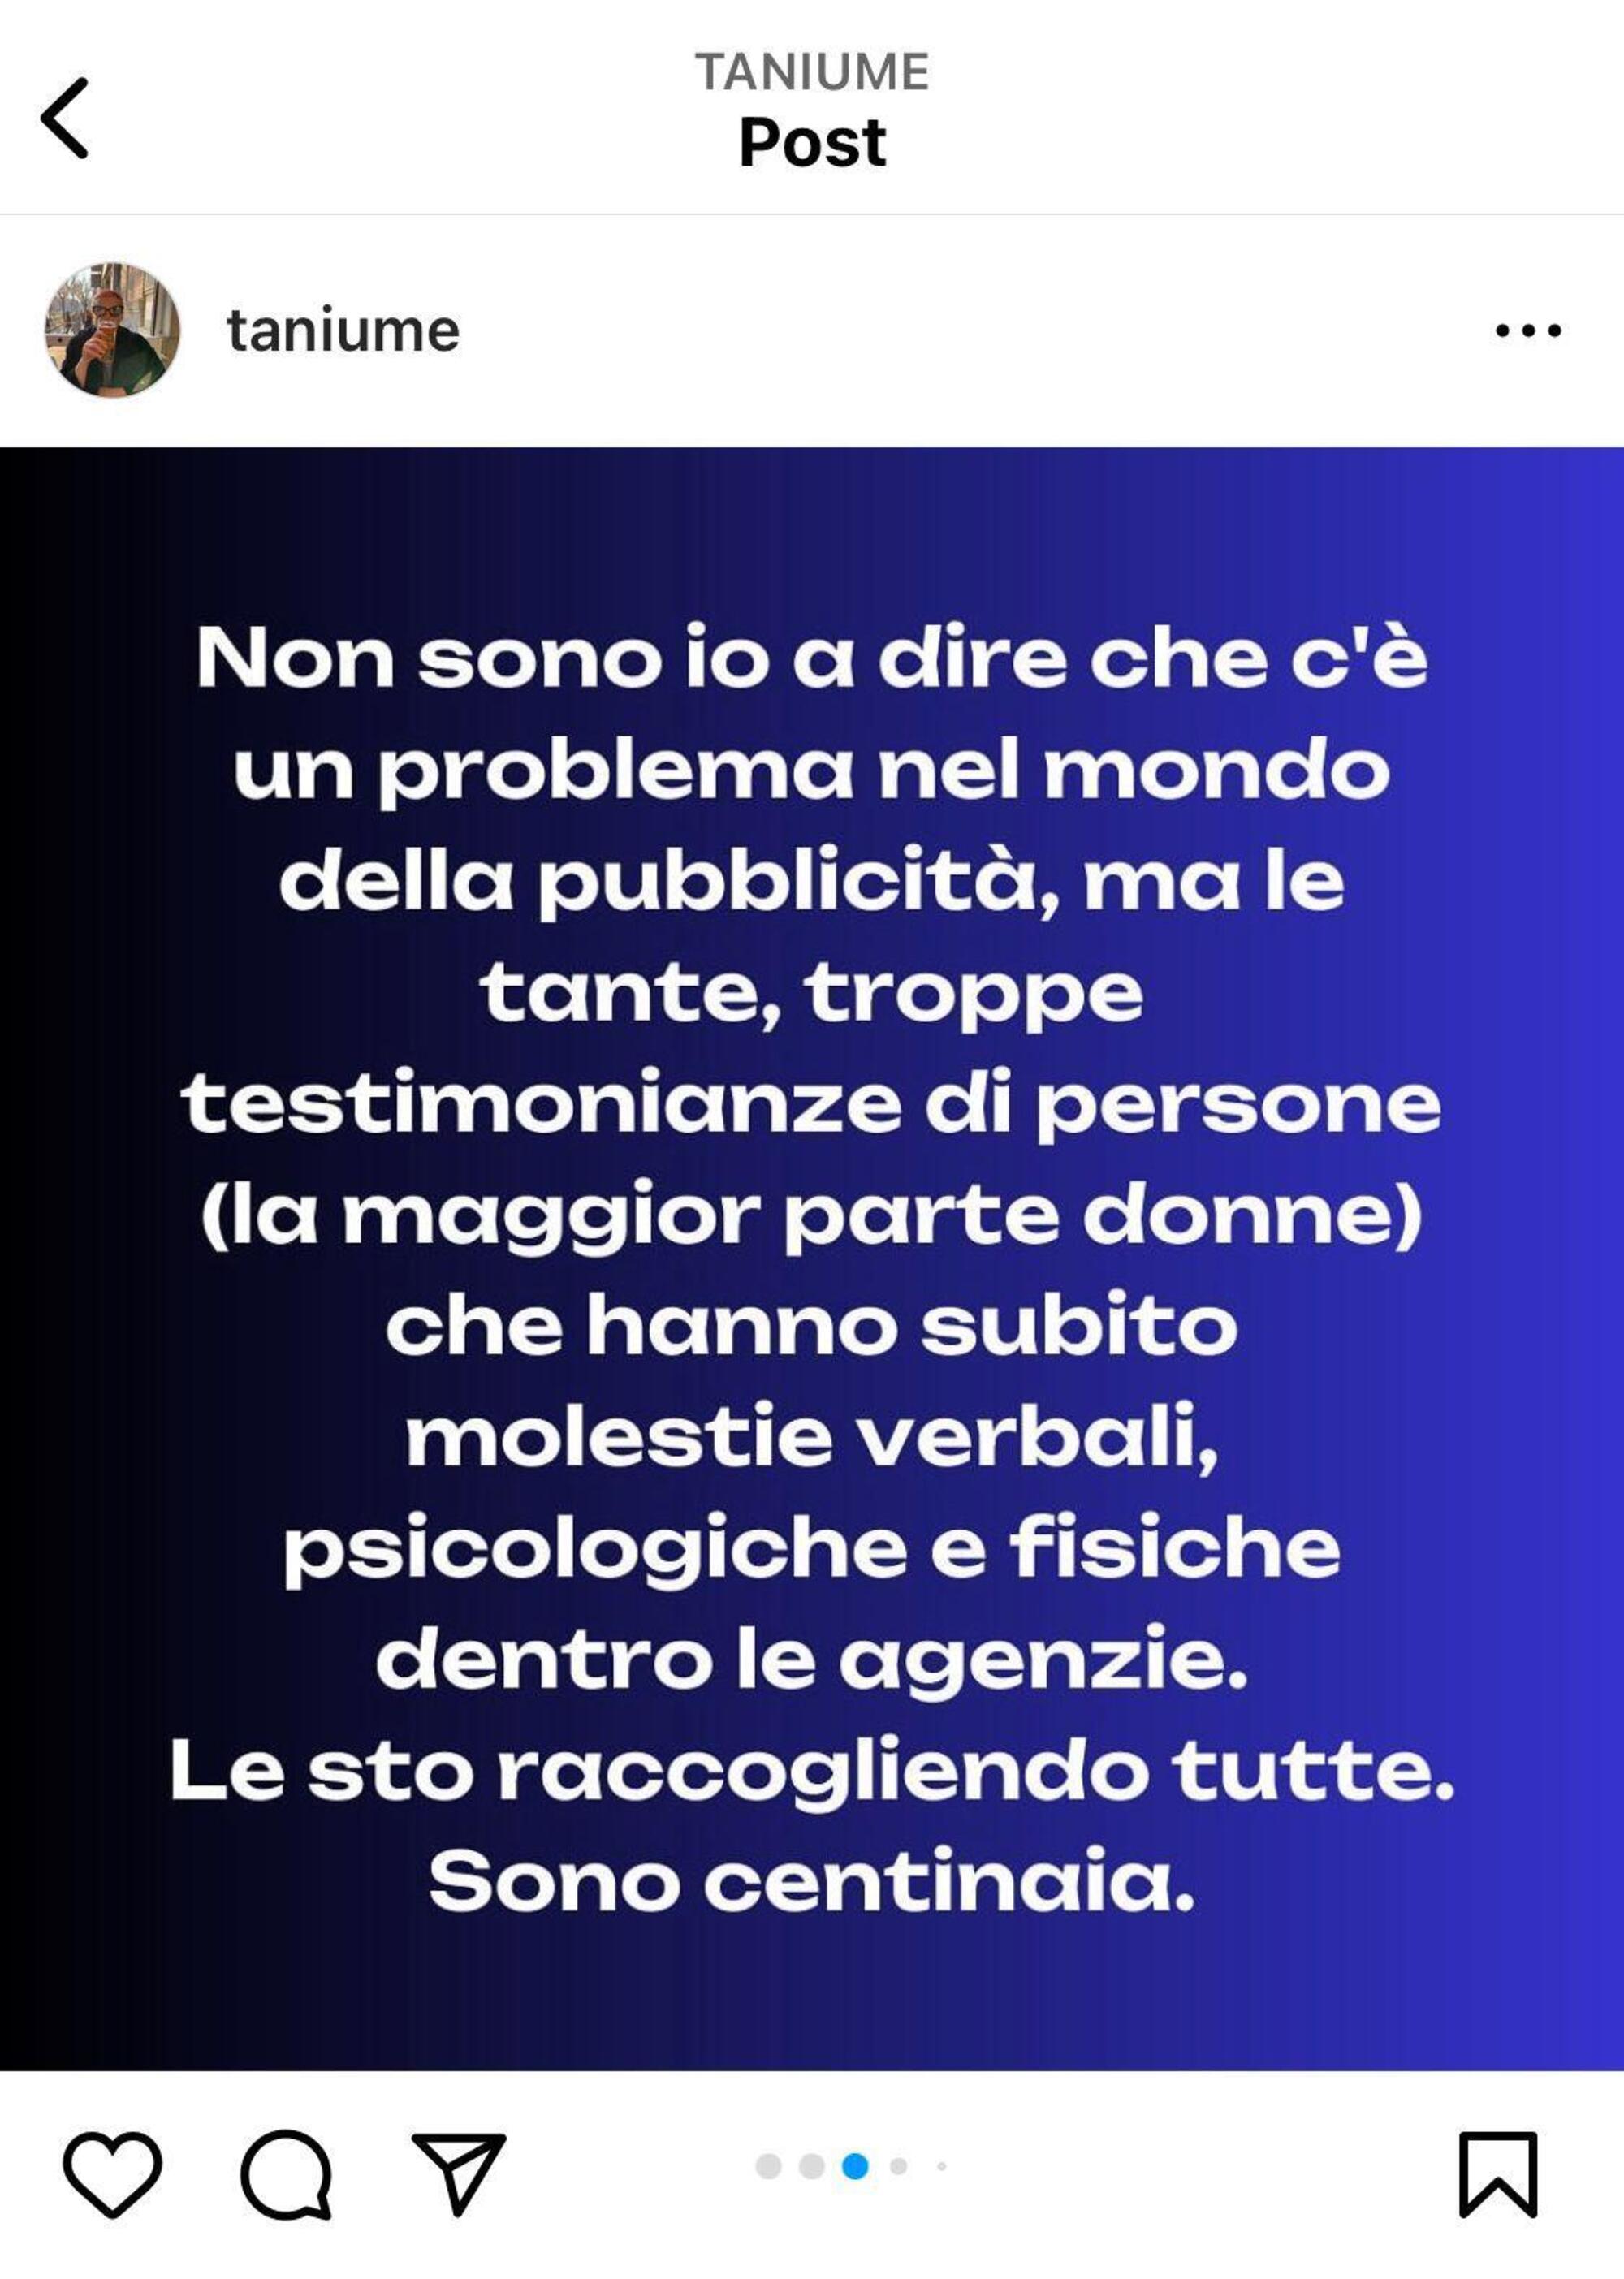 Il post di denuncia delle molestie nelle agenzie pubblicitarie italiane di Tania Taniume sulla sua pagina Instagram